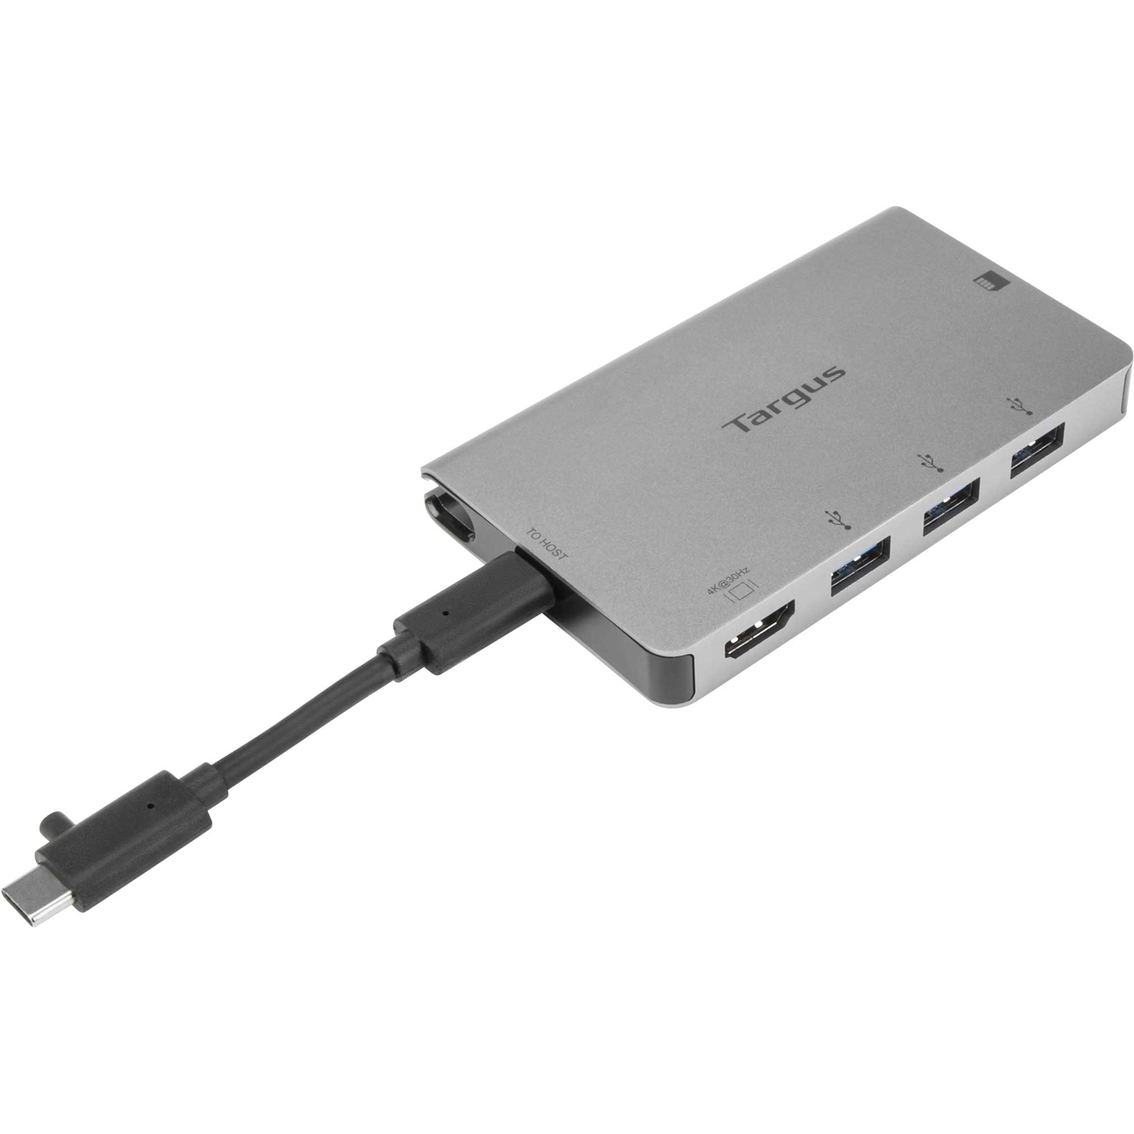 Targus USB C Single Video Multi Port Hub - Image 2 of 7